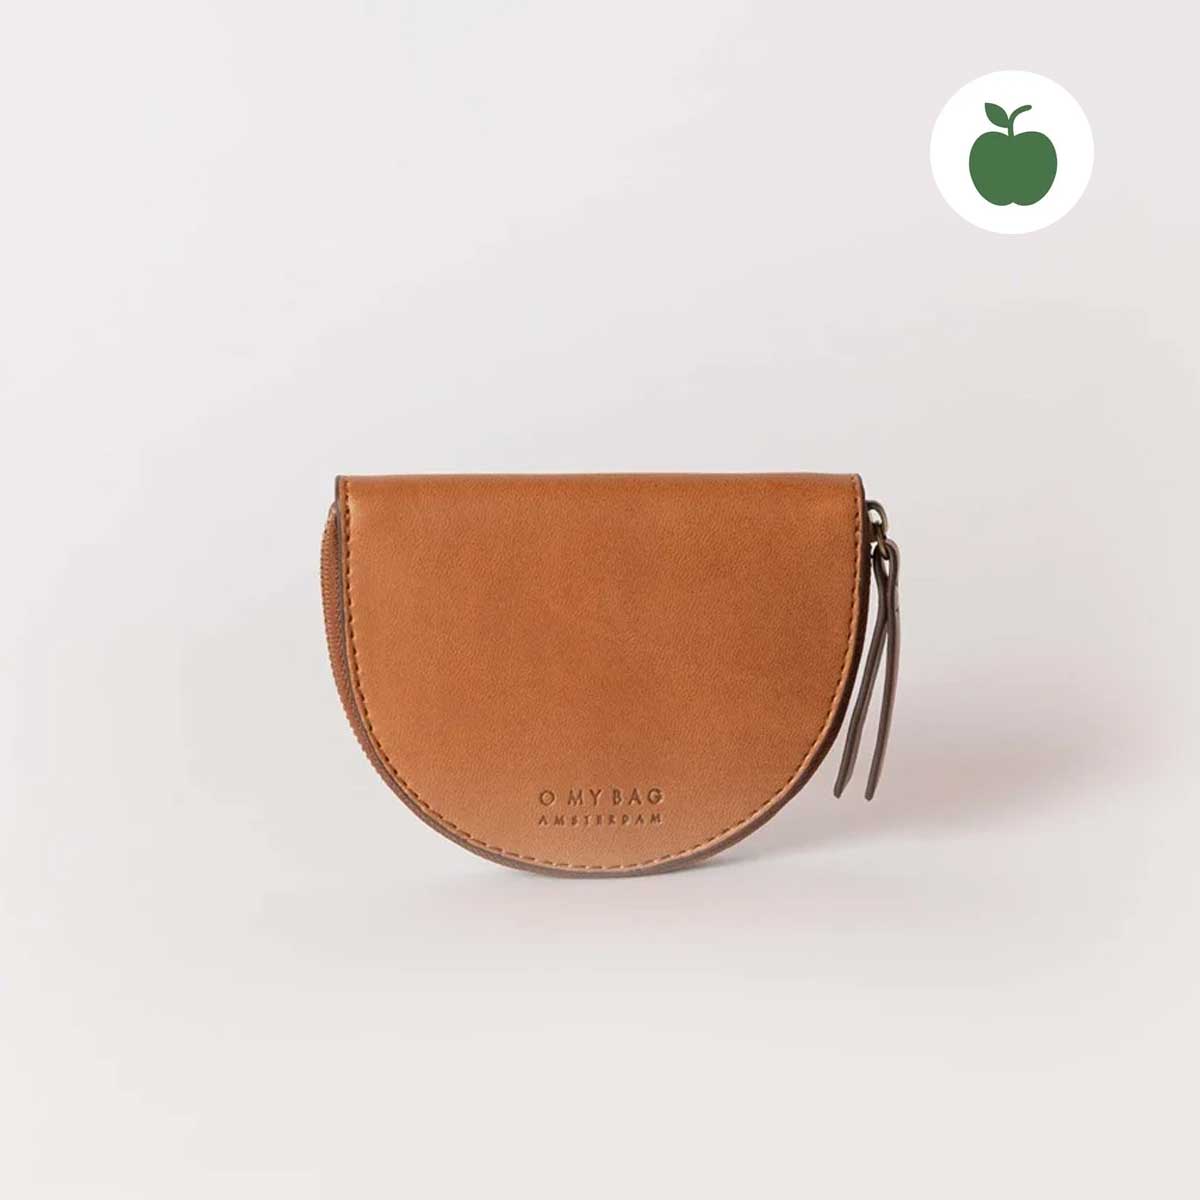 Vegane Münzbörse LAURA von O My Bag aus Apfelleder - eine nachhaltige und innovative Alternative für alle, die tierleidfrei einkaufen wollen.